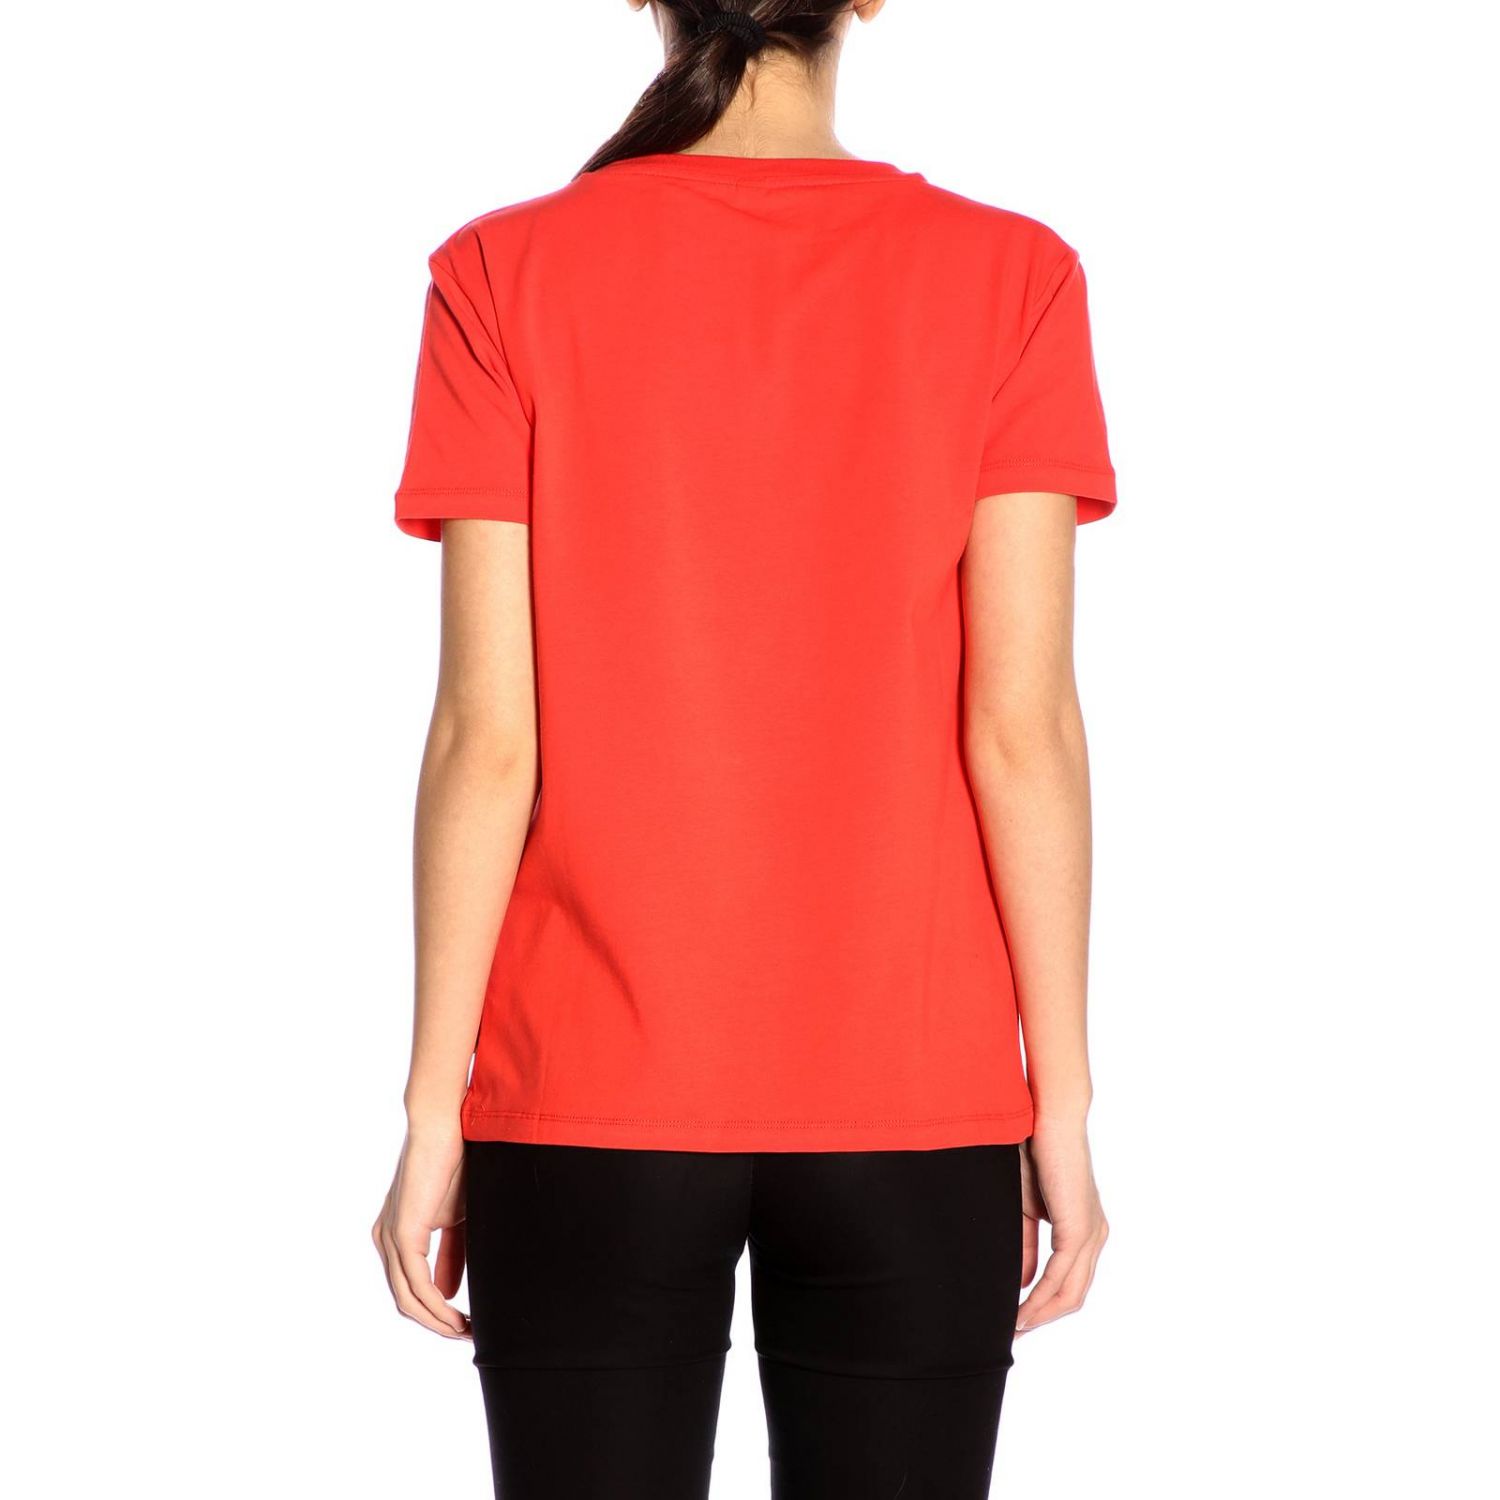 Moschino Outlet: T-shirt women Underbear - Red | T-Shirt Moschino A1903 ...